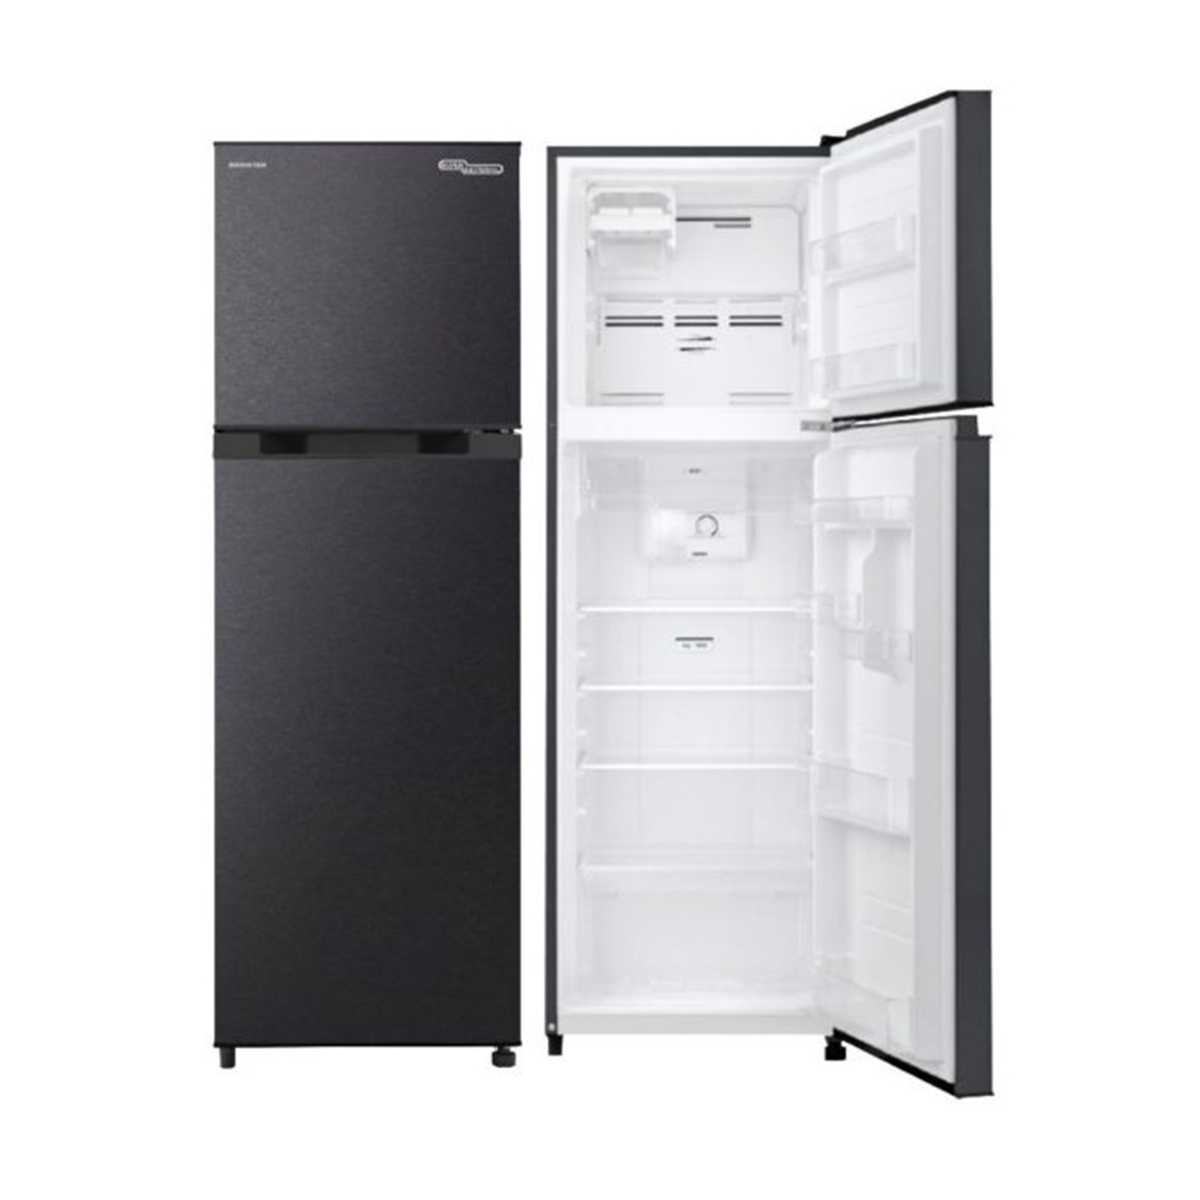 Super General Double Door Refrigerator SGR363iTI 330Ltr